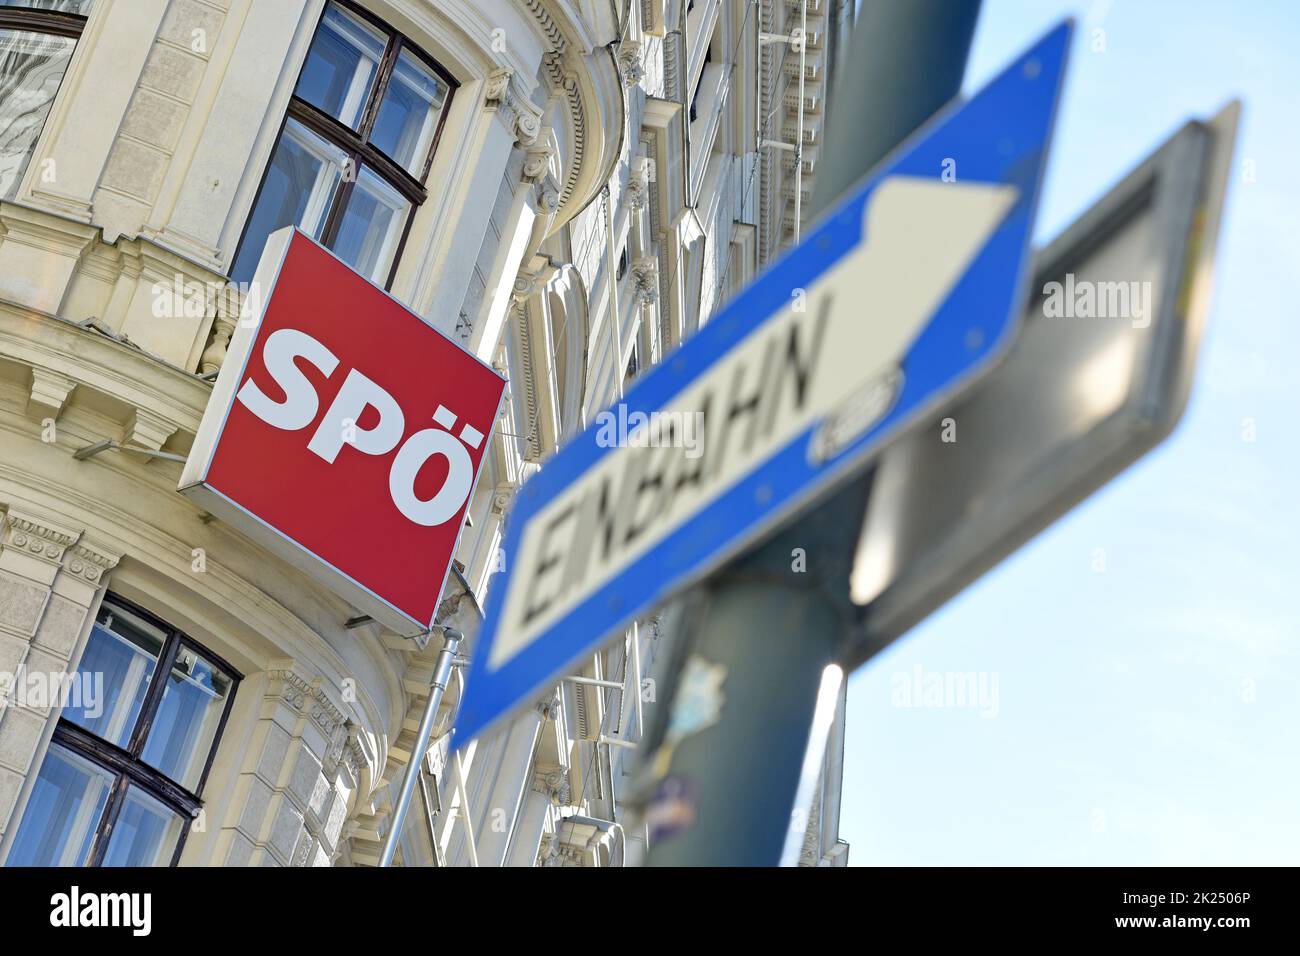 Zentrale der Sozialdemokratischen Partei Österreichs (SPÖ) in der Löwelstraße in Wien - Siège du Parti social-démocrate d'Autriche (SPÖ) o Banque D'Images